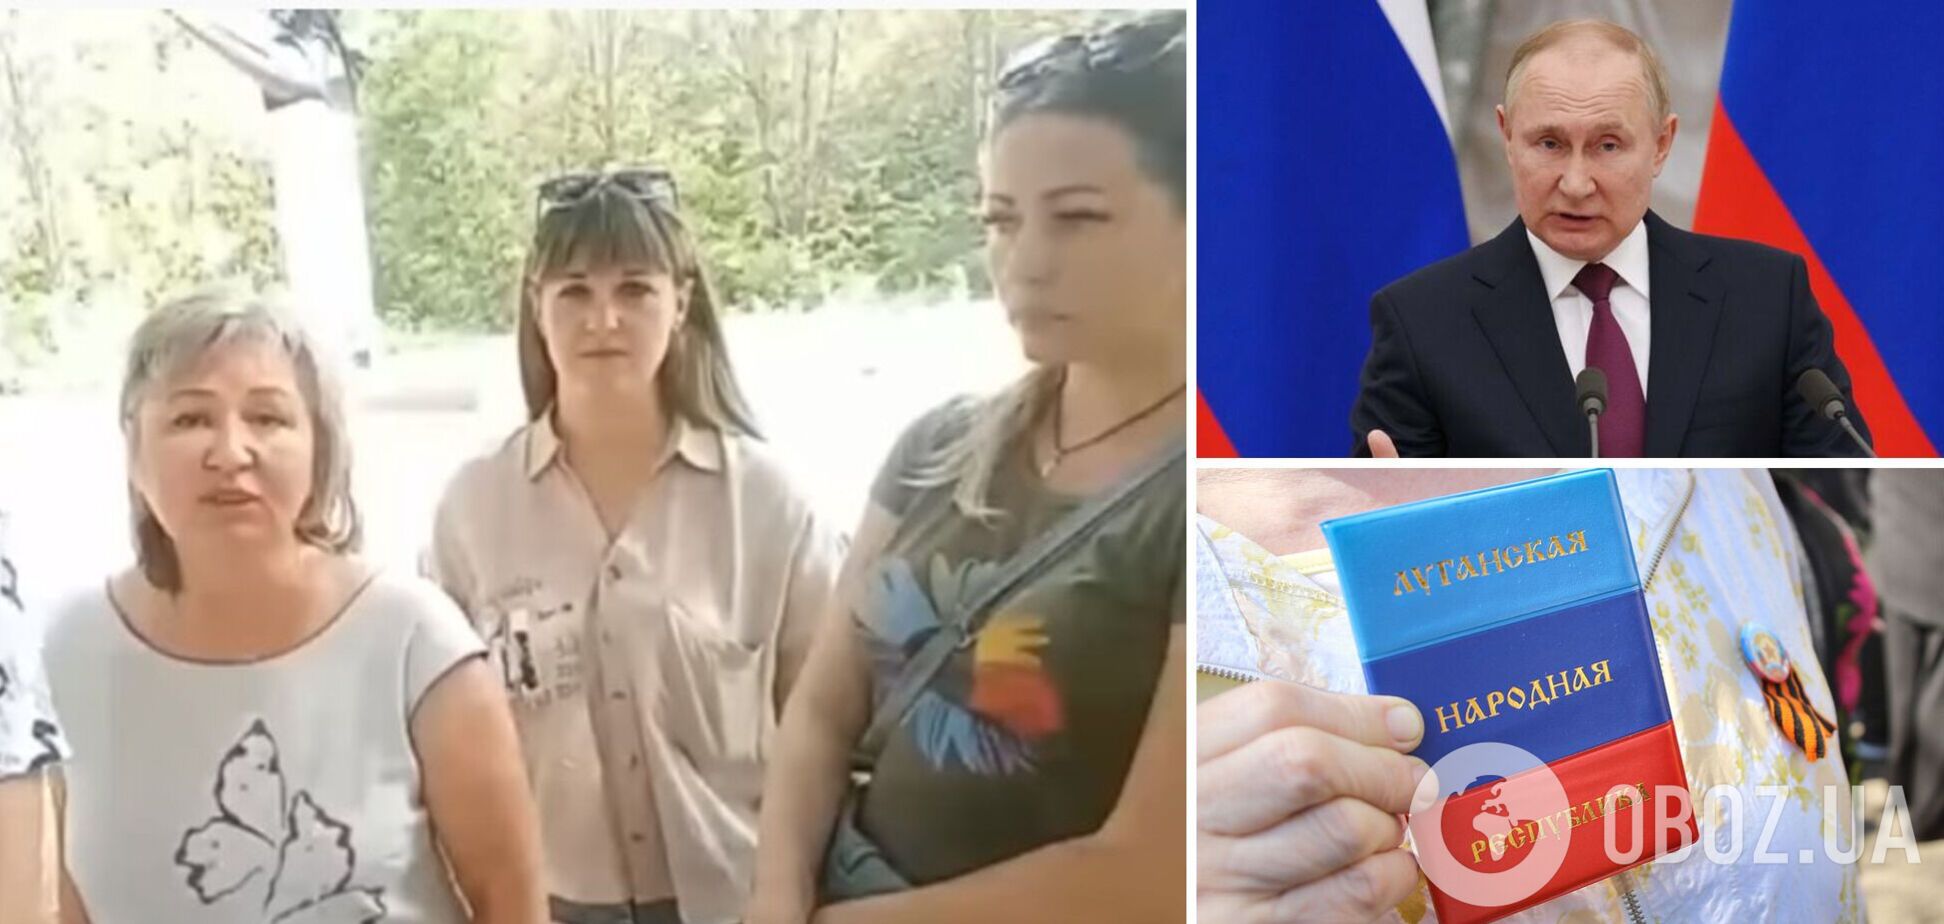 Дружини полонених окупантів з 'ЛНР' звернулися до Путіна по допомогу